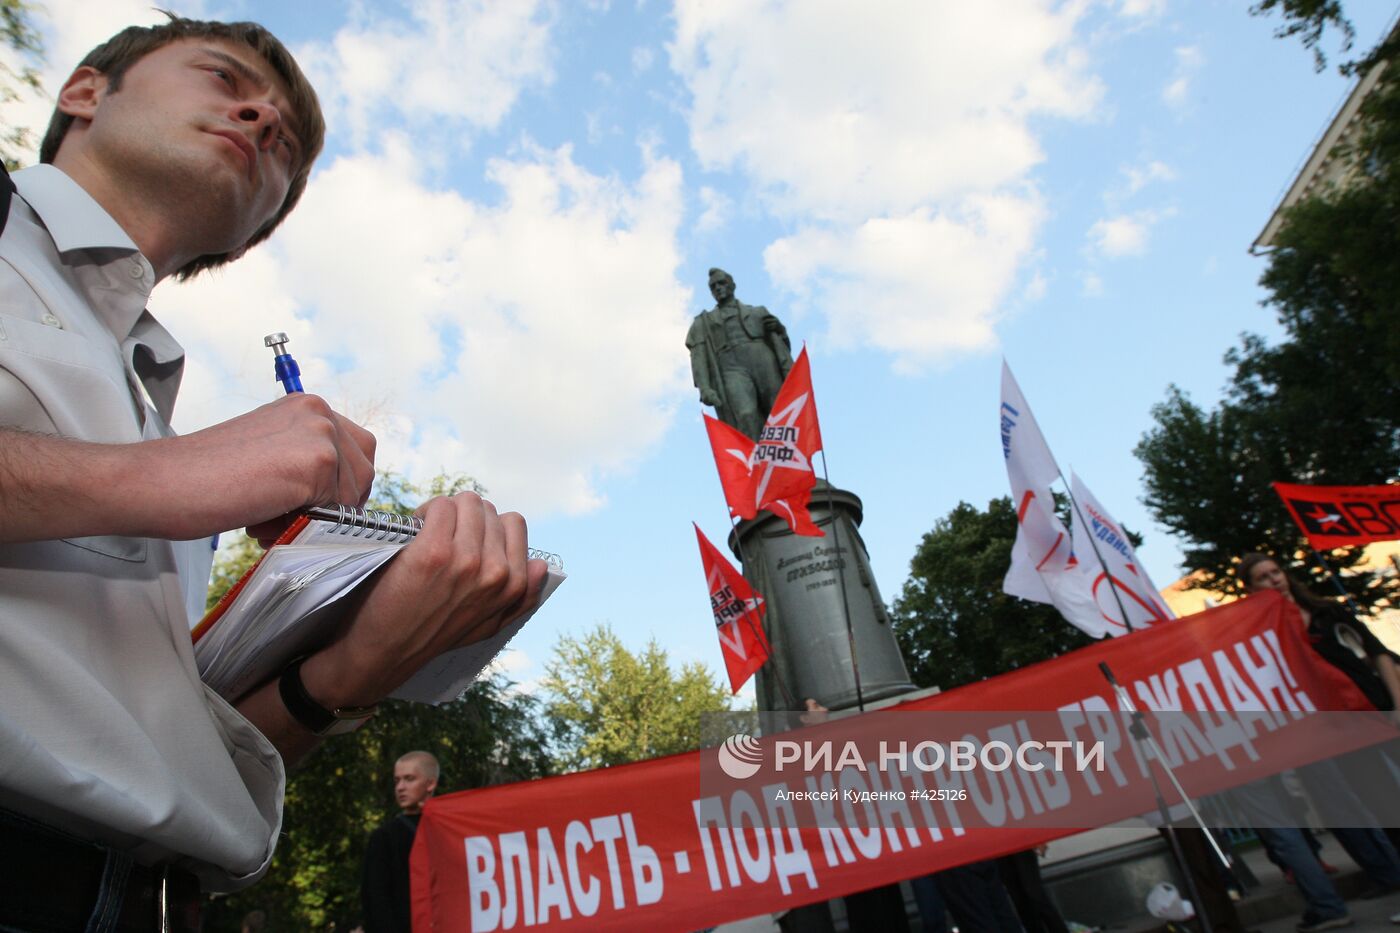 Митинг против проекта Генплана развития Москвы